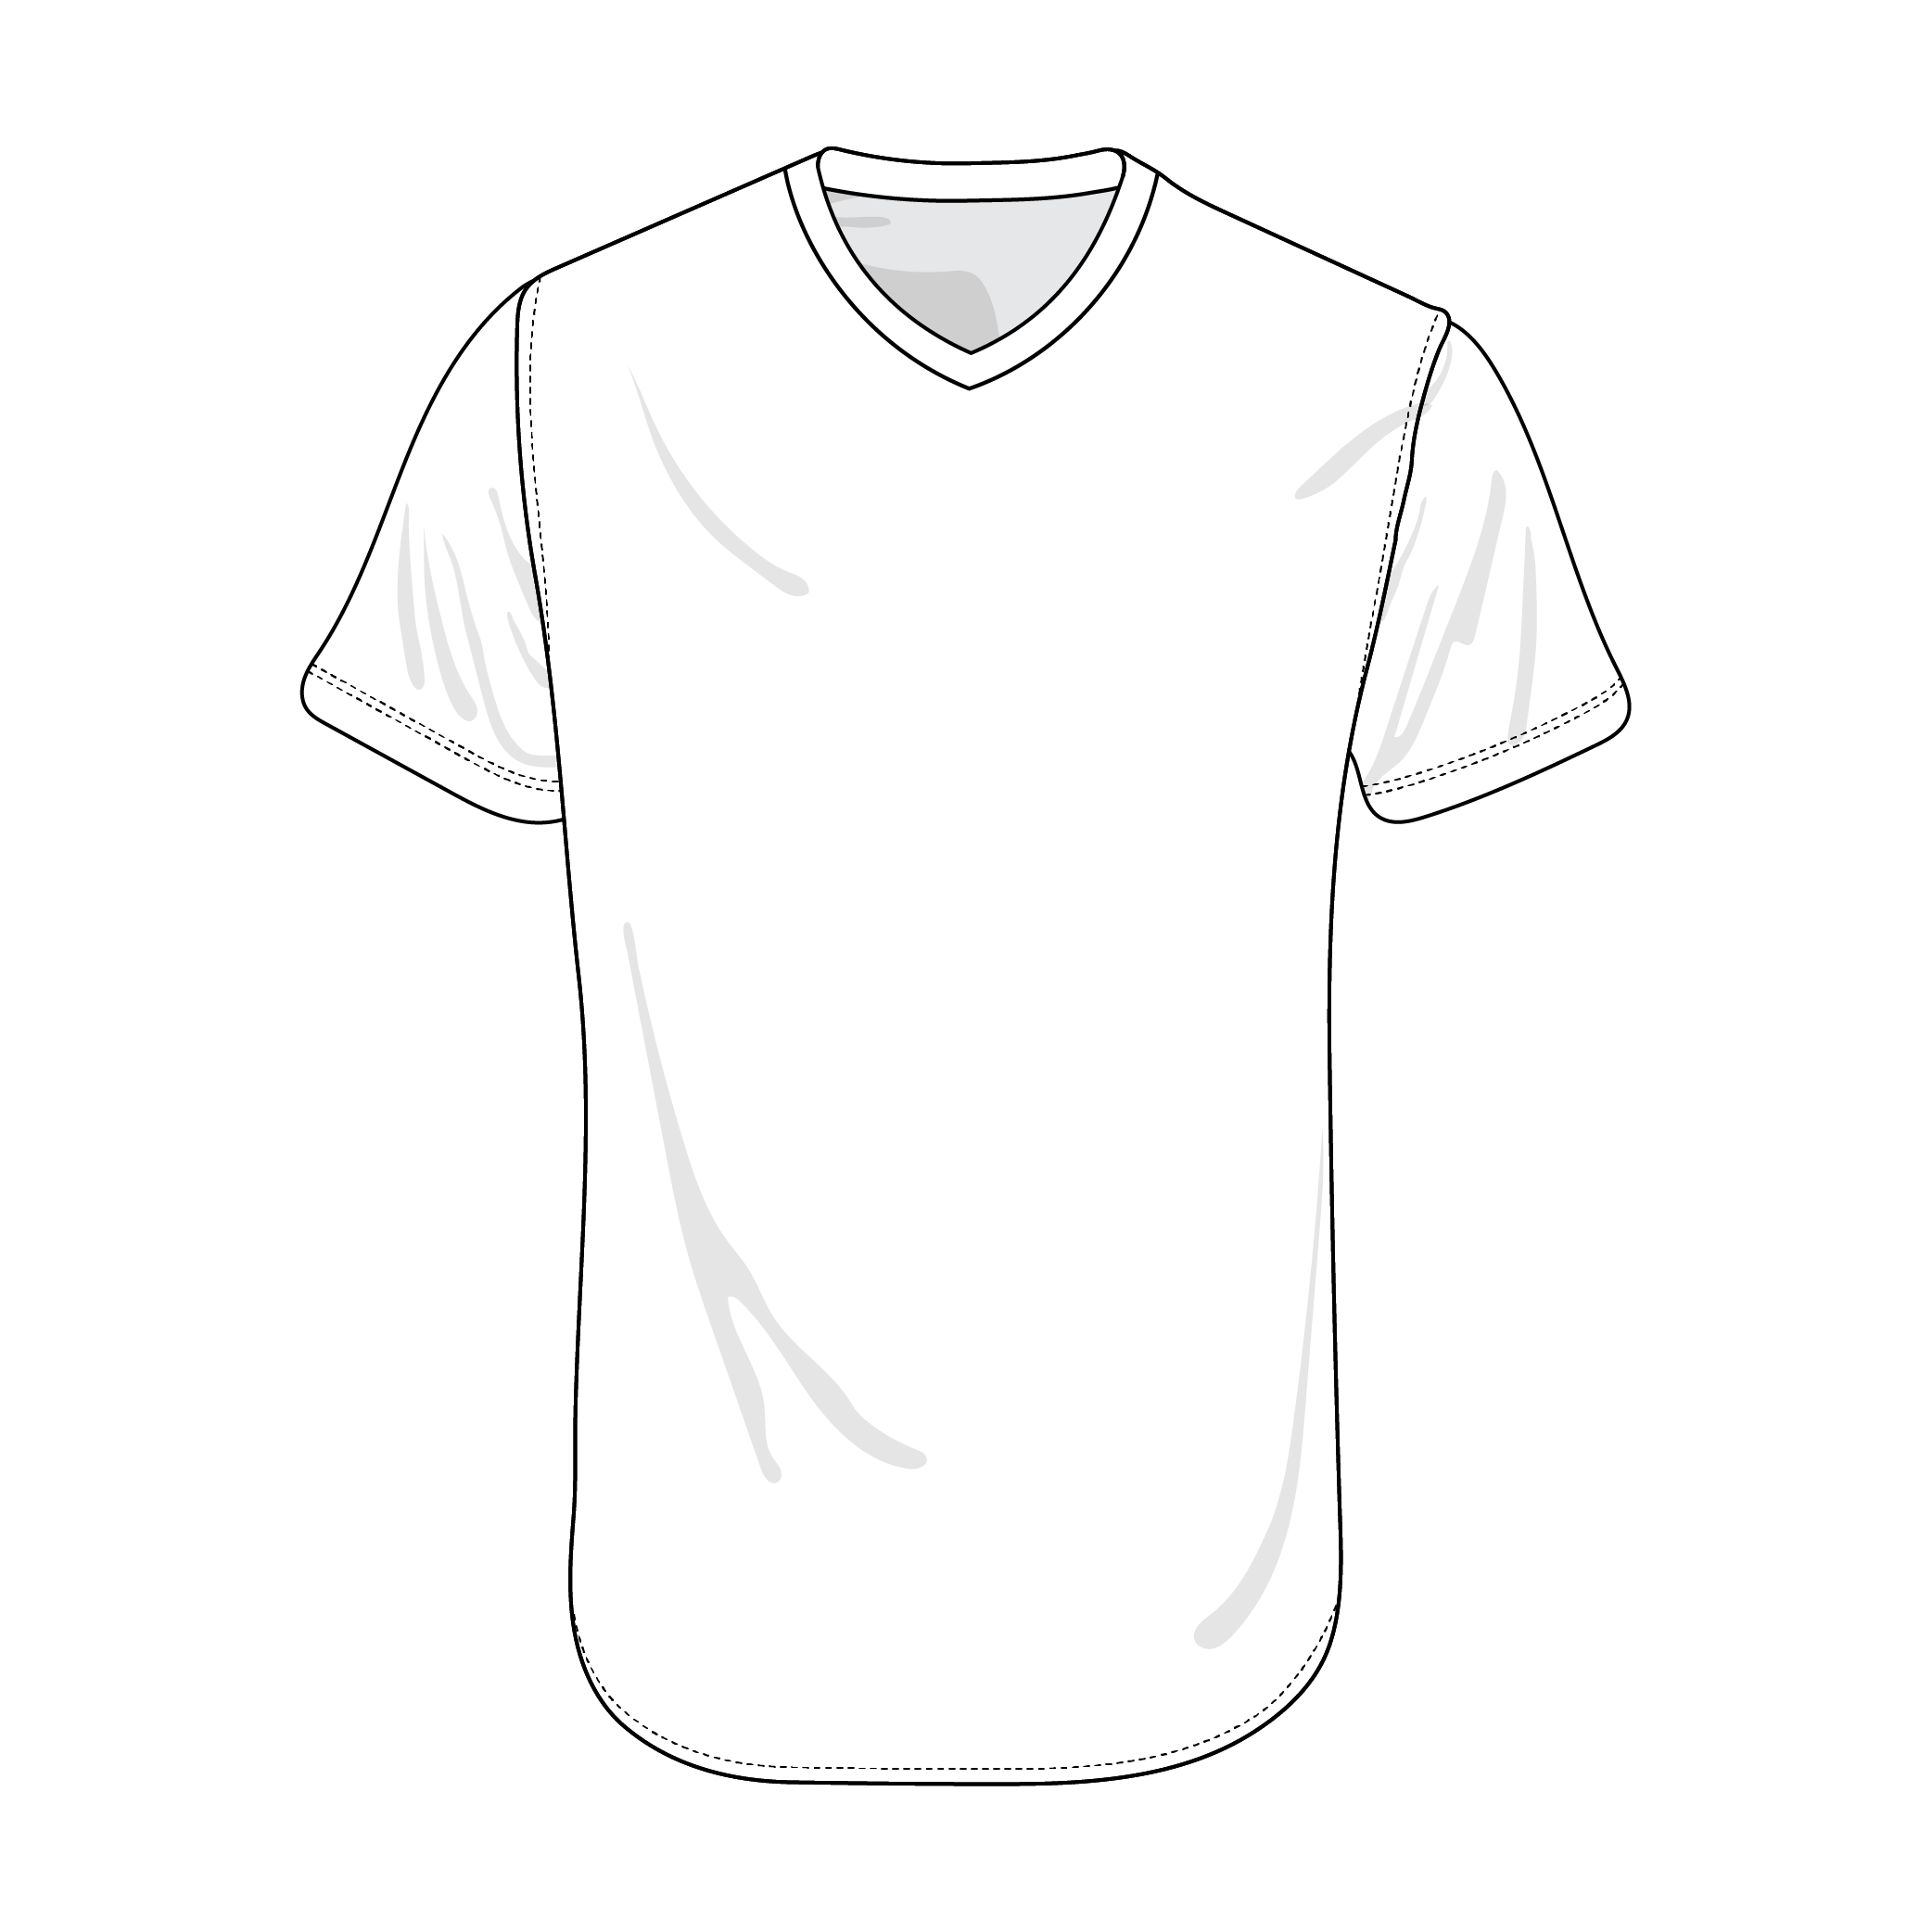 baseball jersey drawing